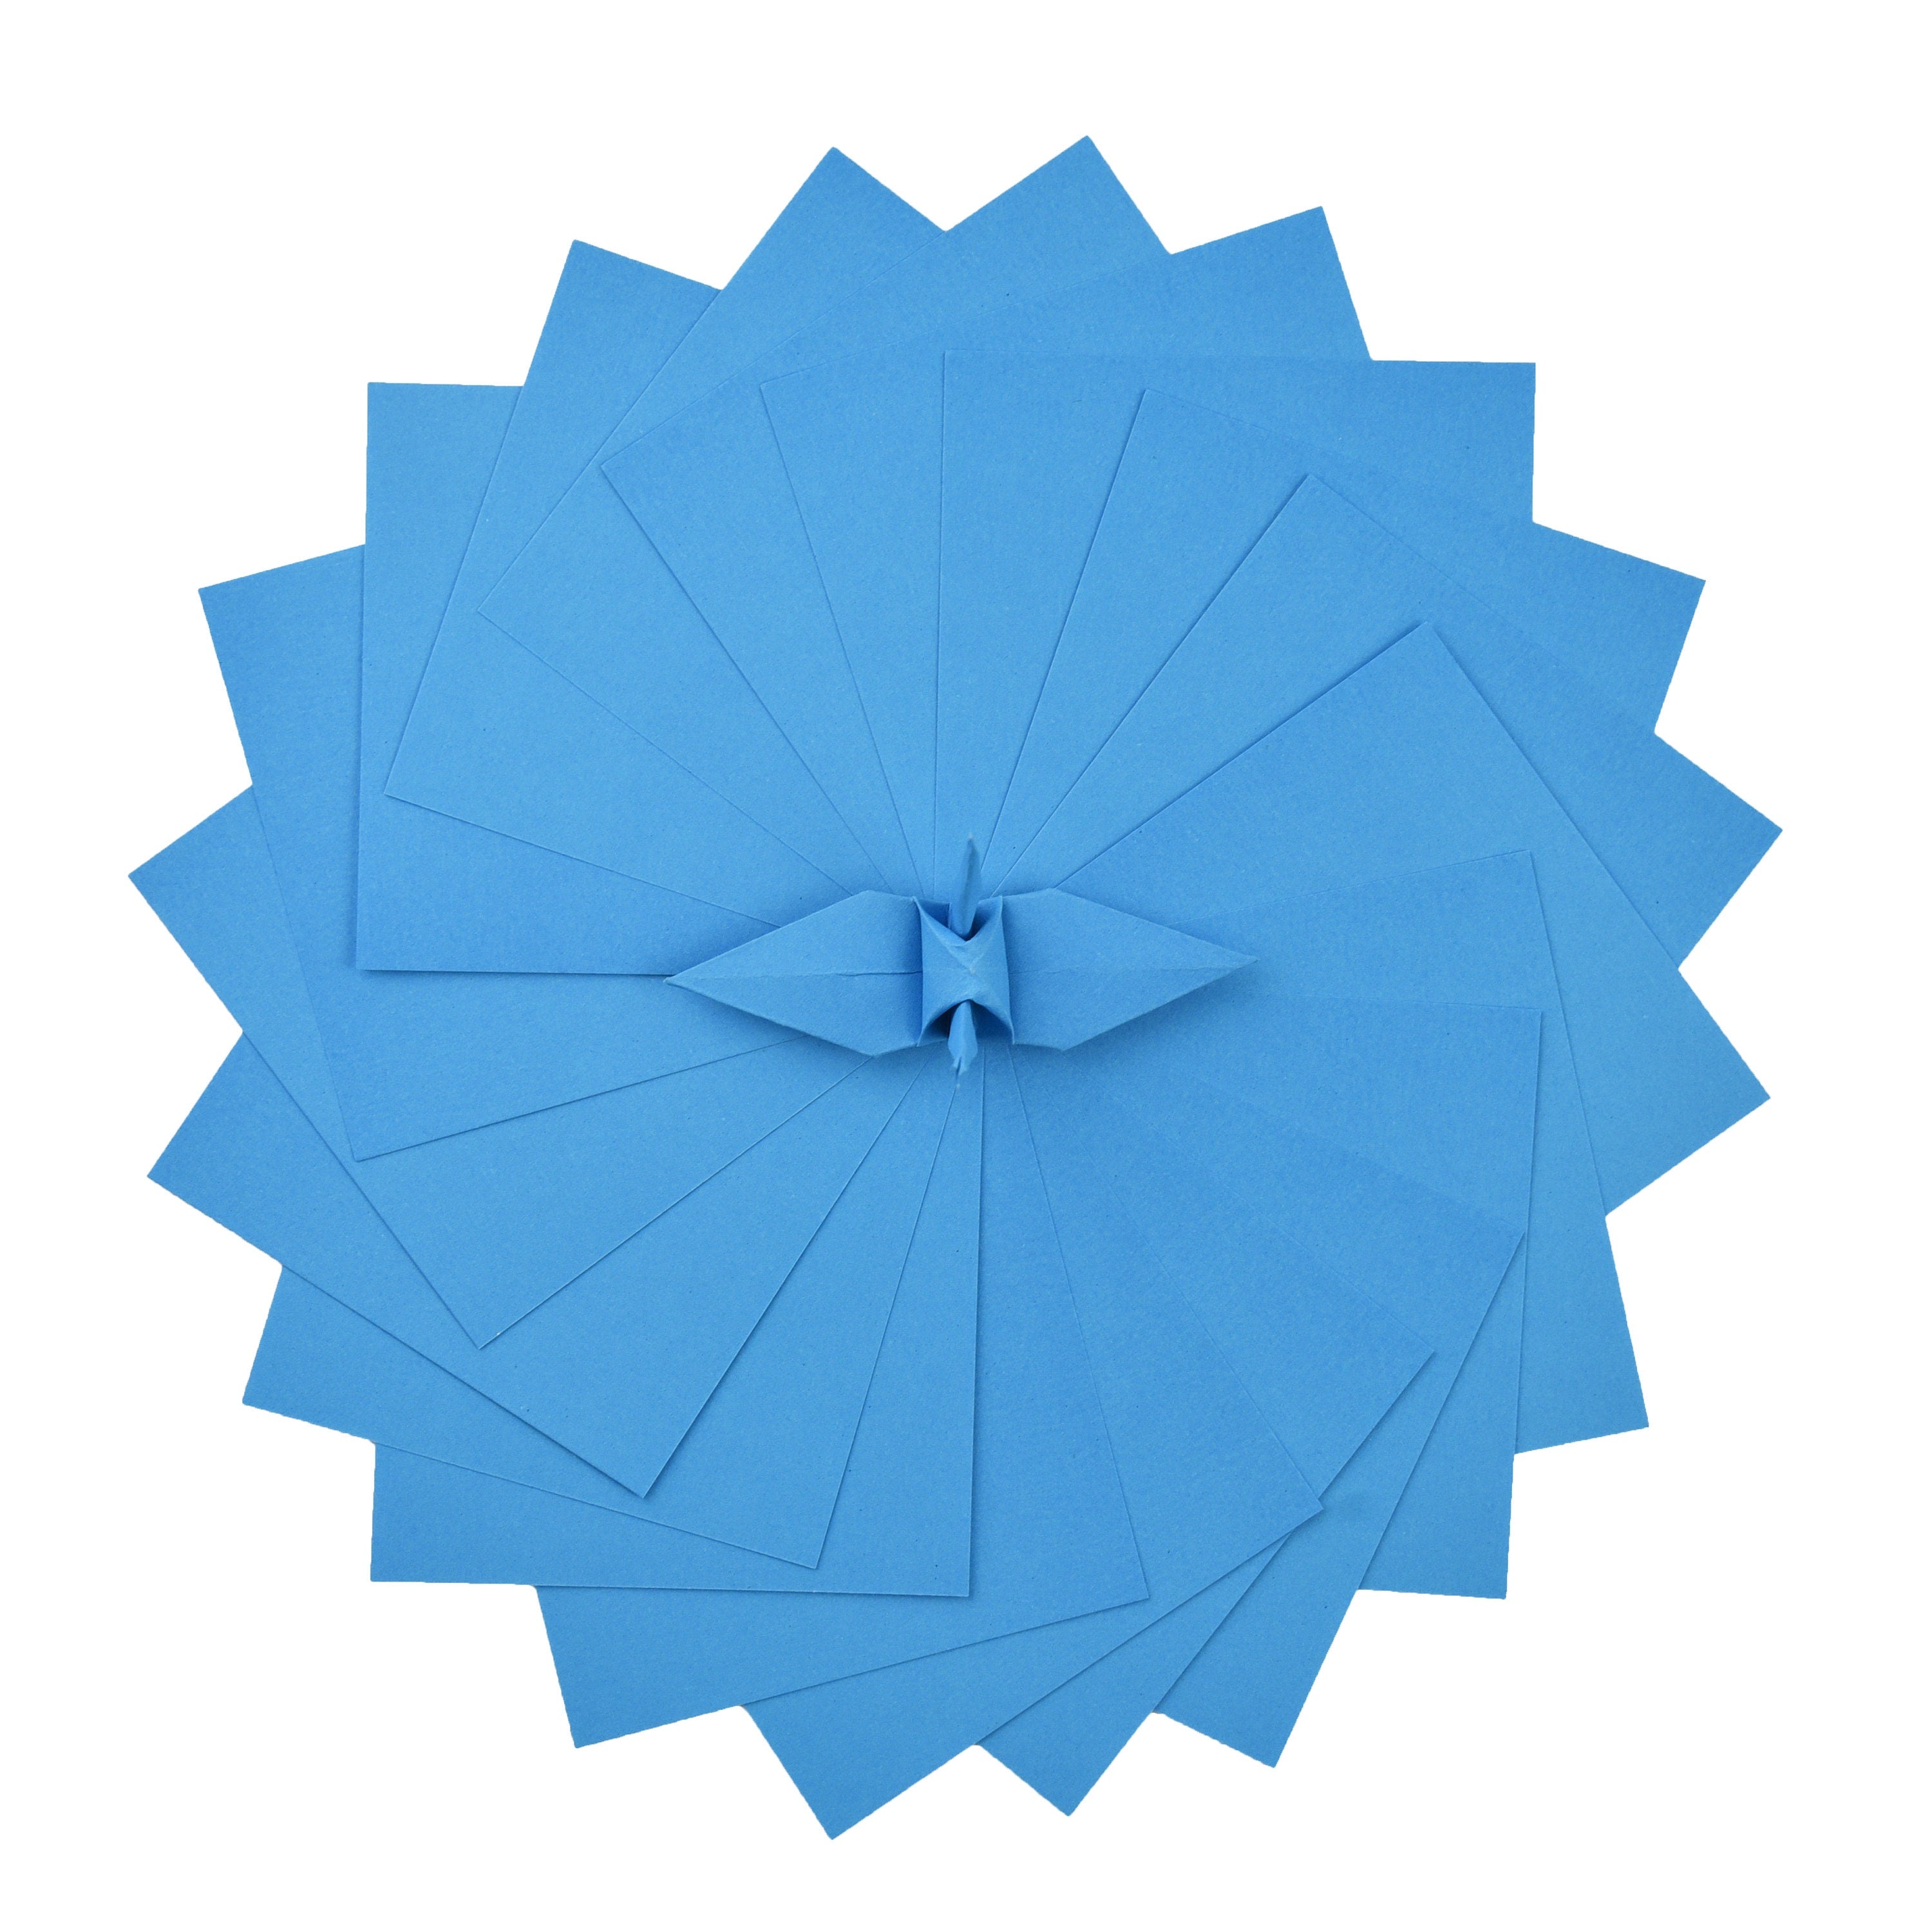 100 fogli di carta origami - 6x6 pollici - Confezione di carta quadrata per piegare, gru origami e decorazioni - S18